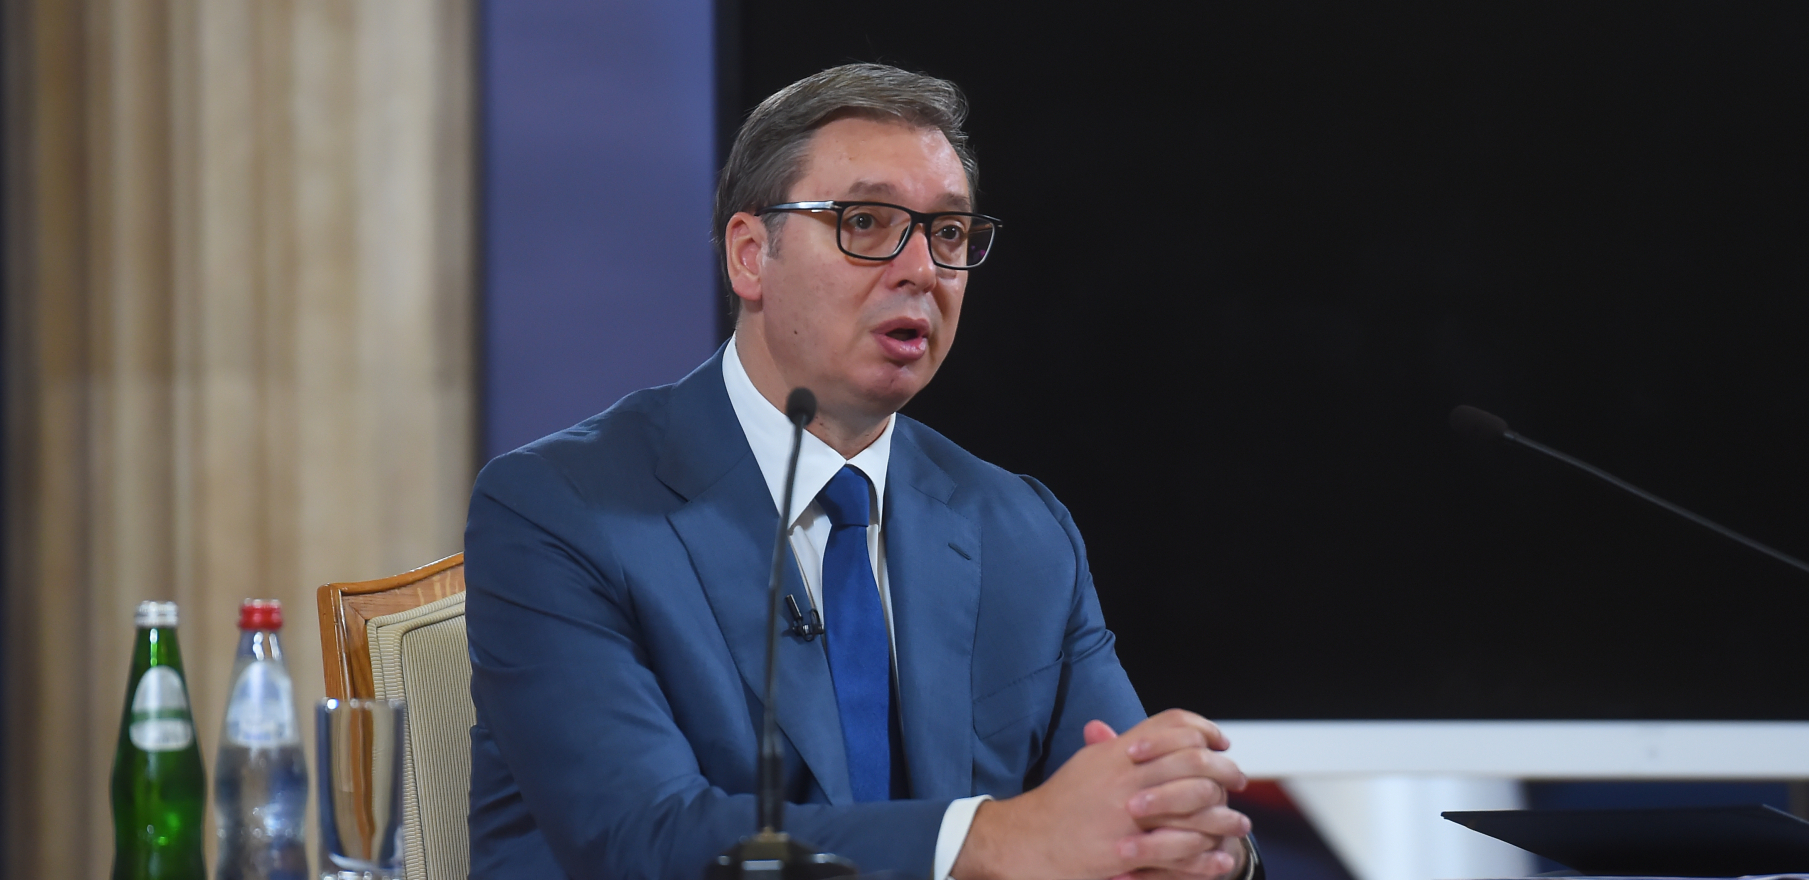 "SRBIJA SE RADUJE OGROMNIM USPESIMA" Aleksandar Vučić čestitao rvačima na sjajnim podvizima na šampionatu sveta